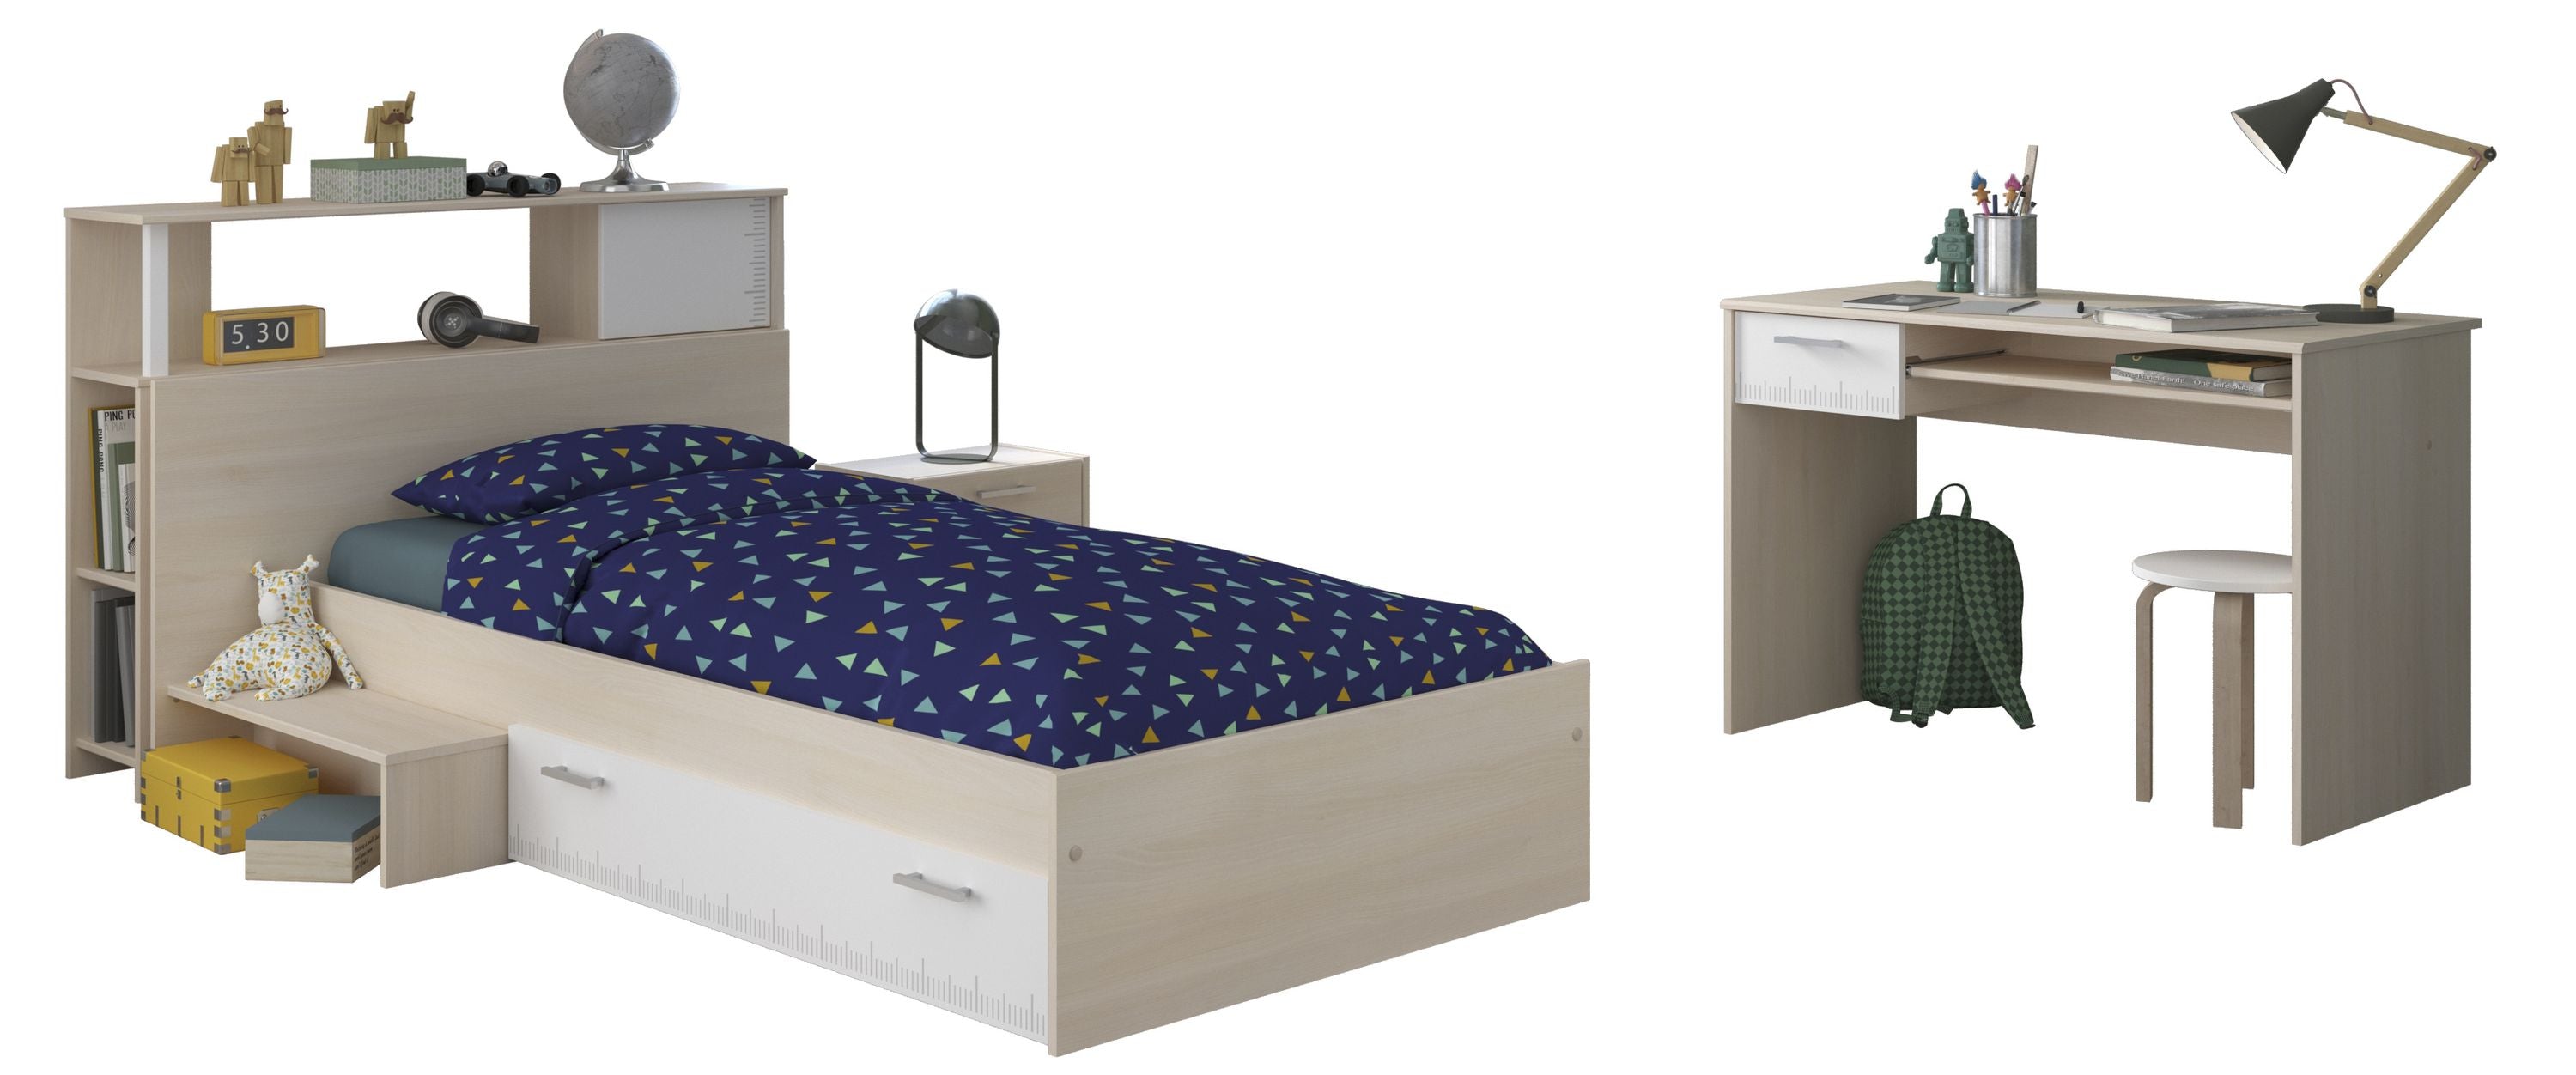 Kinderzimmer Charly 11 Parisot 3-teilig Bett 90*200 cm inkl. Bettkasten + Schreibtisch + Nachtkommode